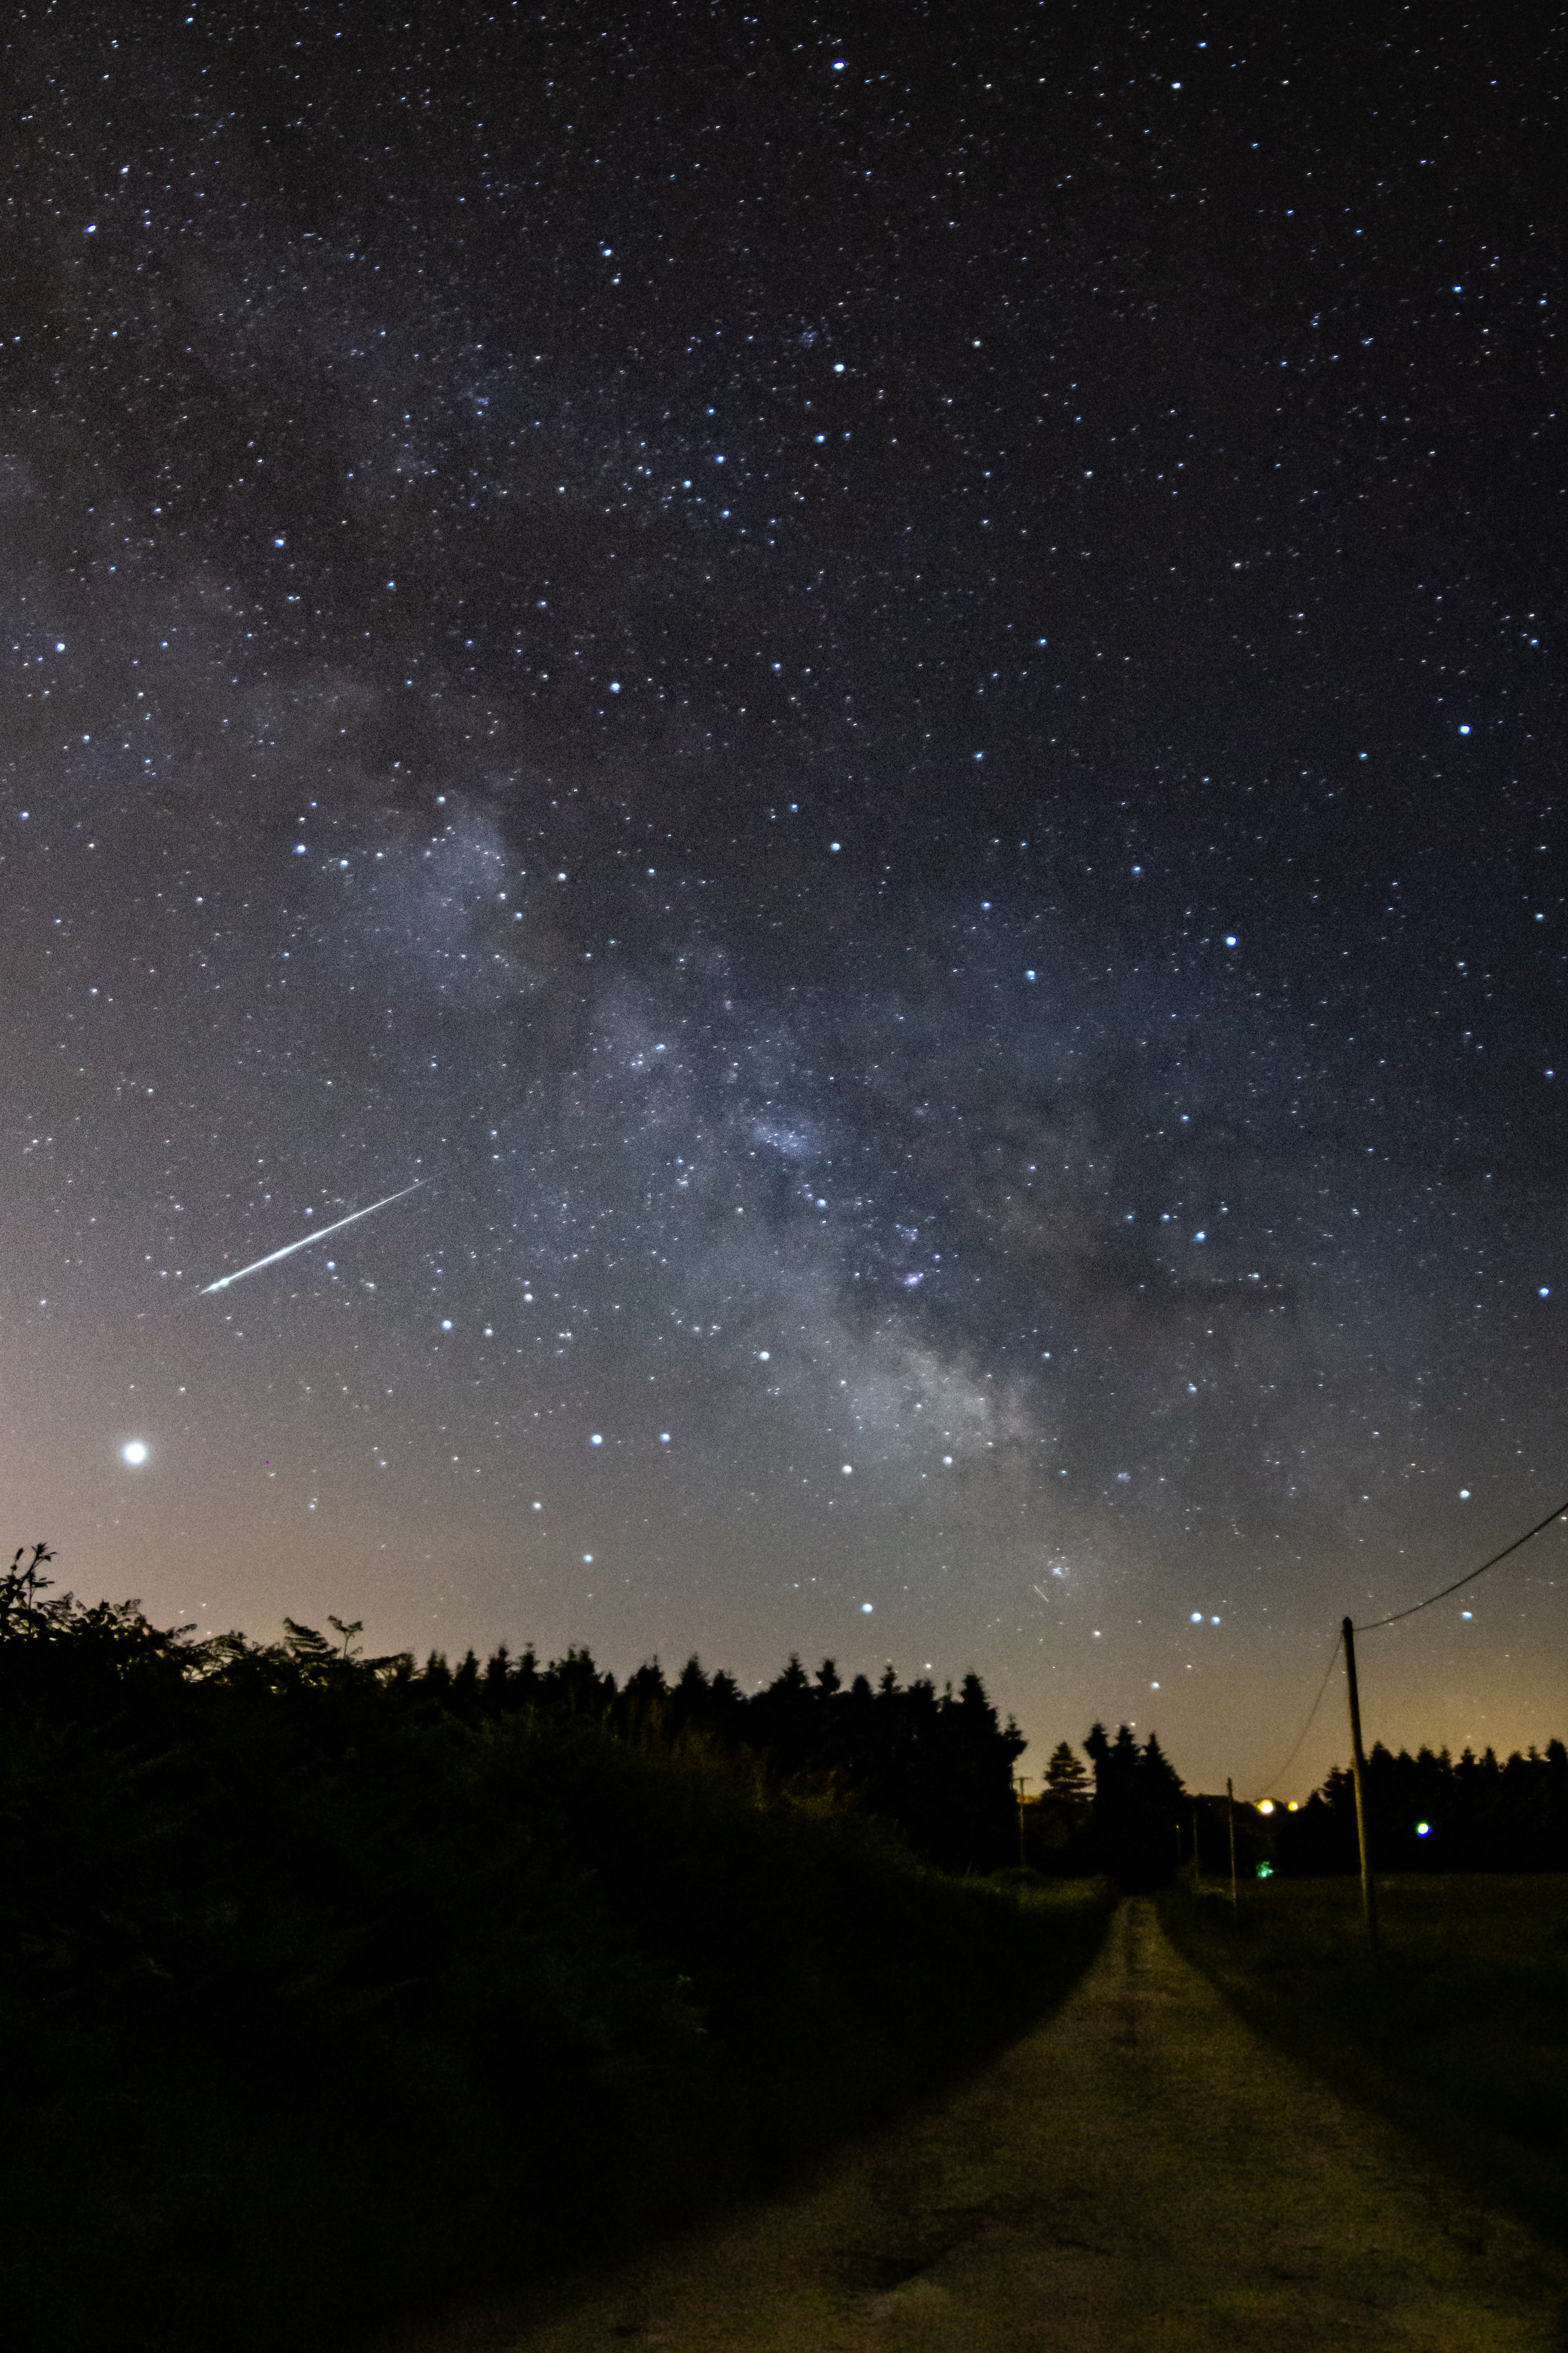 Meteorite in the night sky